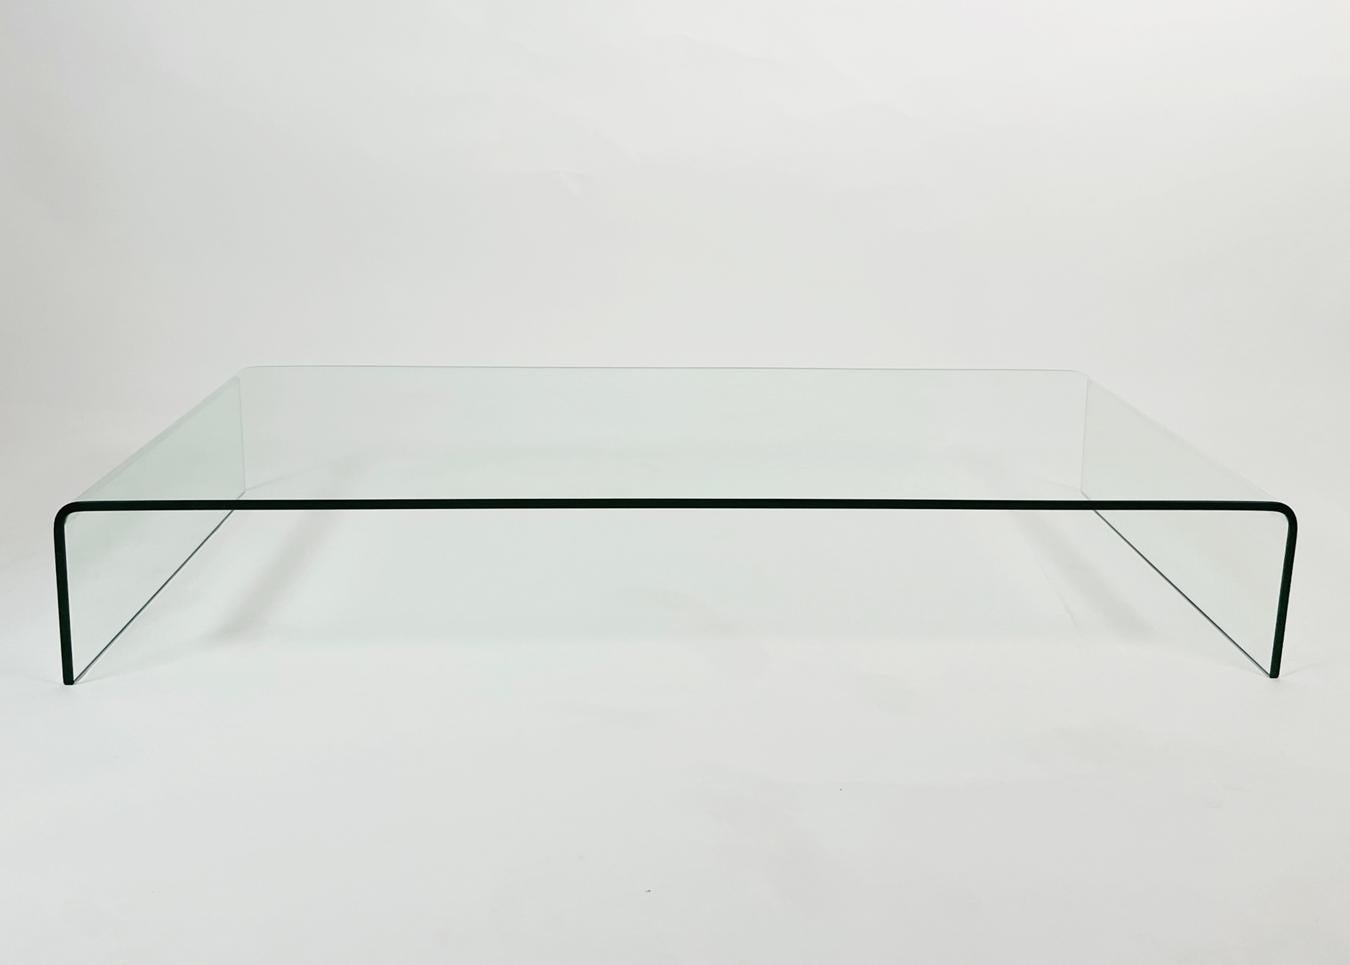 Voici notre superbe table basse Waterfall en verre massif. Ce meuble exquis est fabriqué à partir de verre de haute qualité, offrant un look élégant et moderne à n'importe quel salon. La table présente des bords incurvés qui créent un effet de